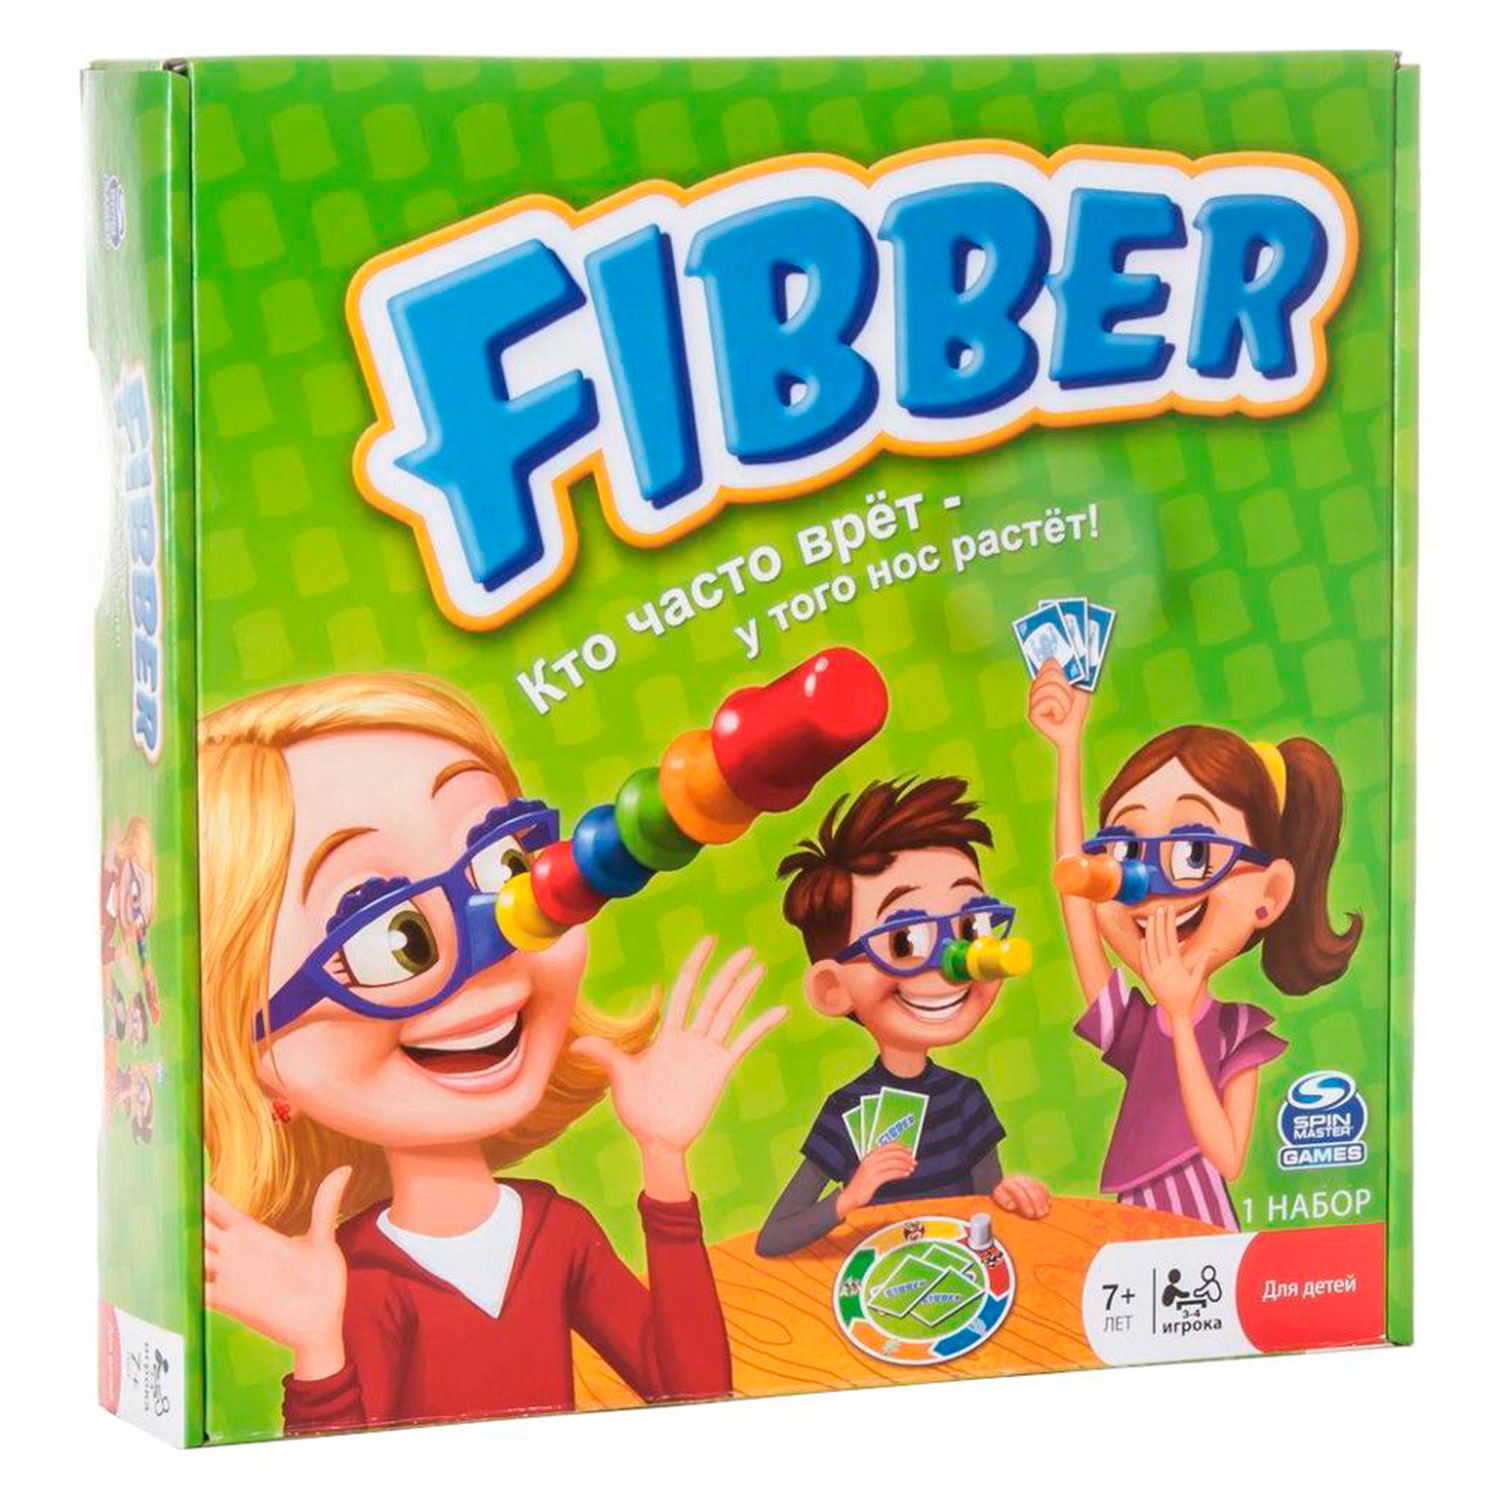 Игра говоря детски. Игра фибер. Игра спин мастер фибер. Настольная игра "Fibber". Фибер игрушка.